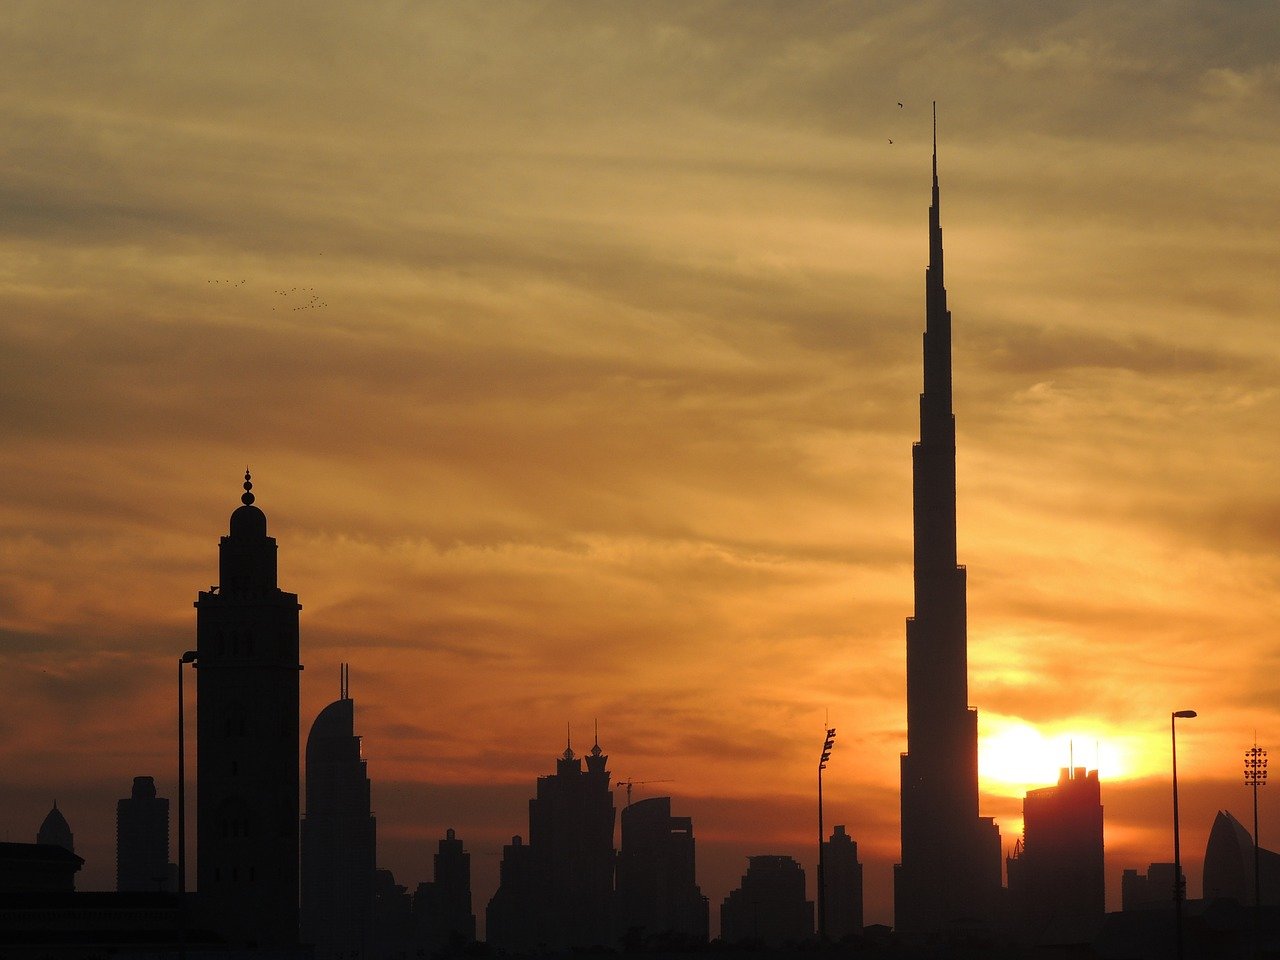 Смотровая площадка башни Бурдж-Халифа в Дубае: описание, как подняться, сколько стоит, экскурсии, билет онлайн